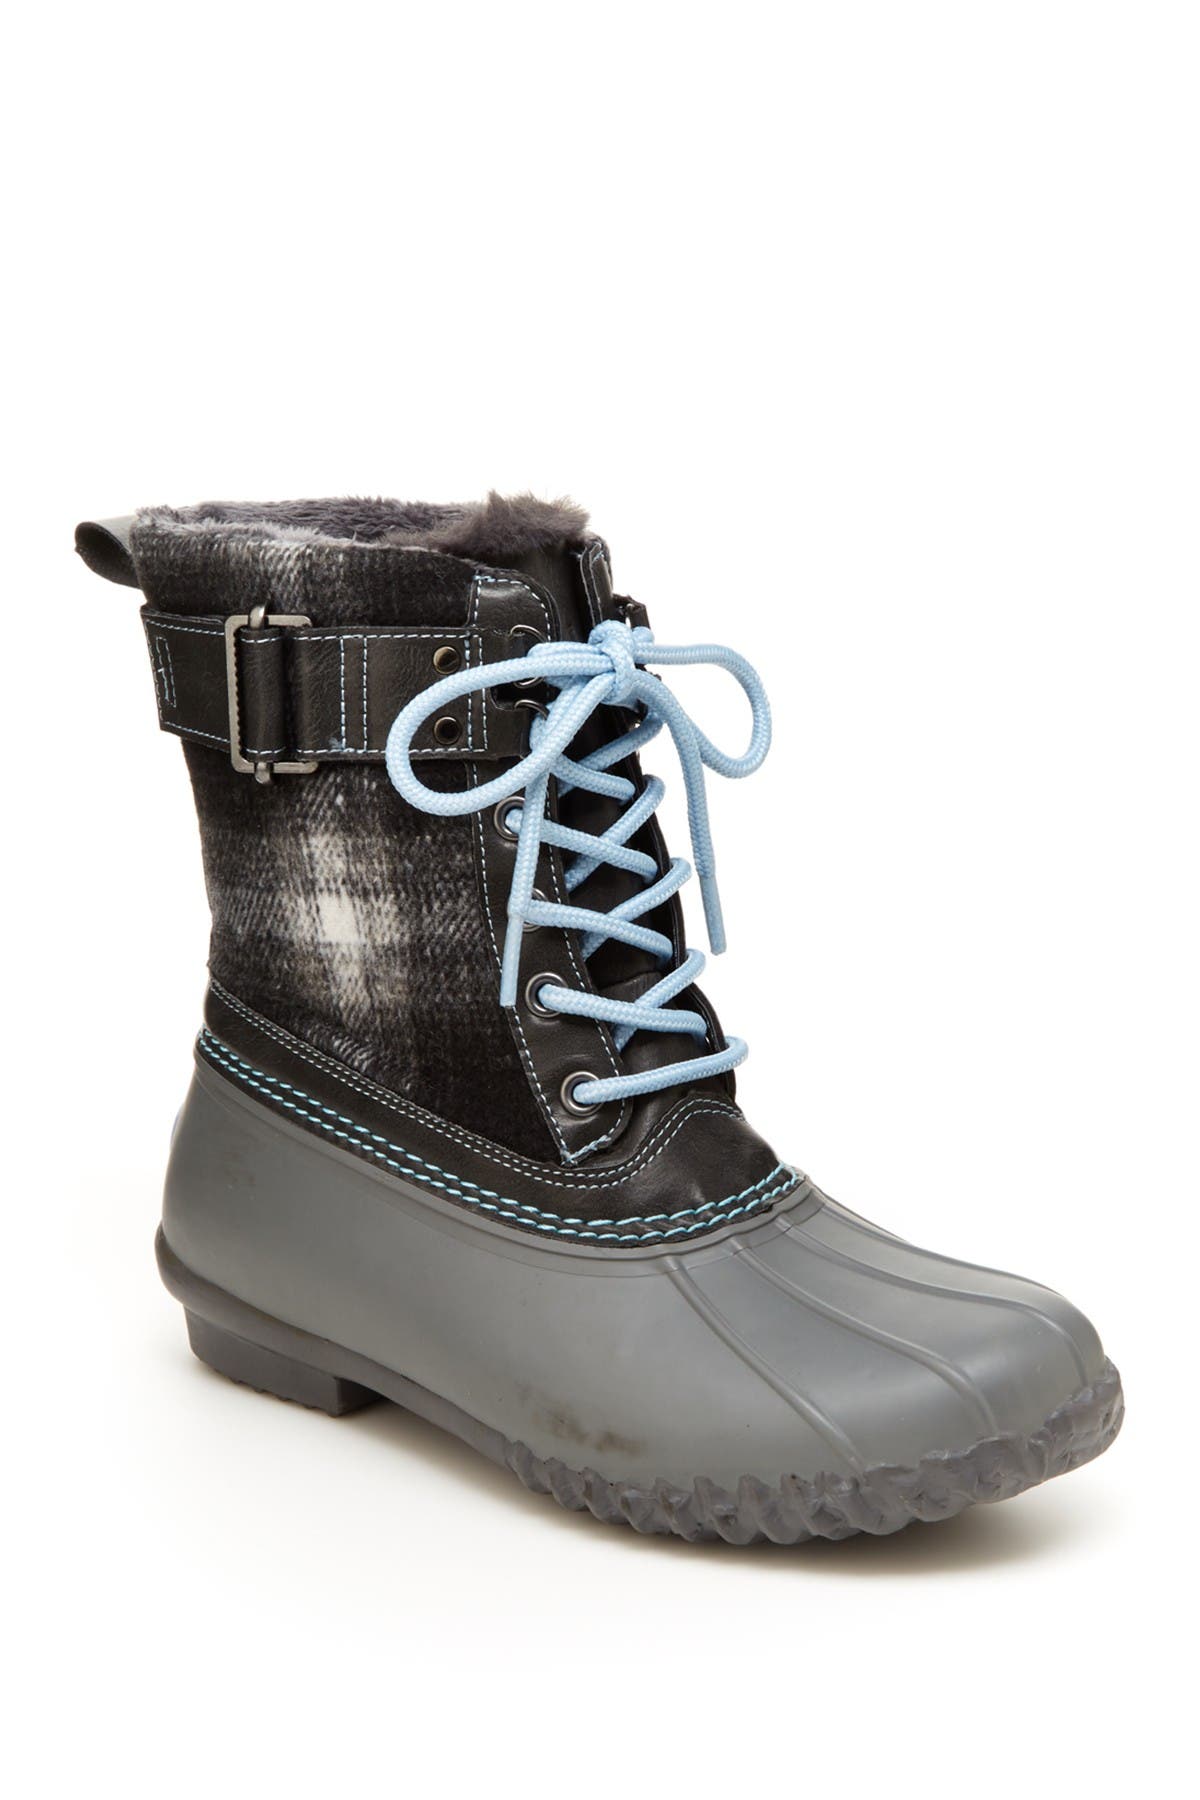 jbu waterproof boots